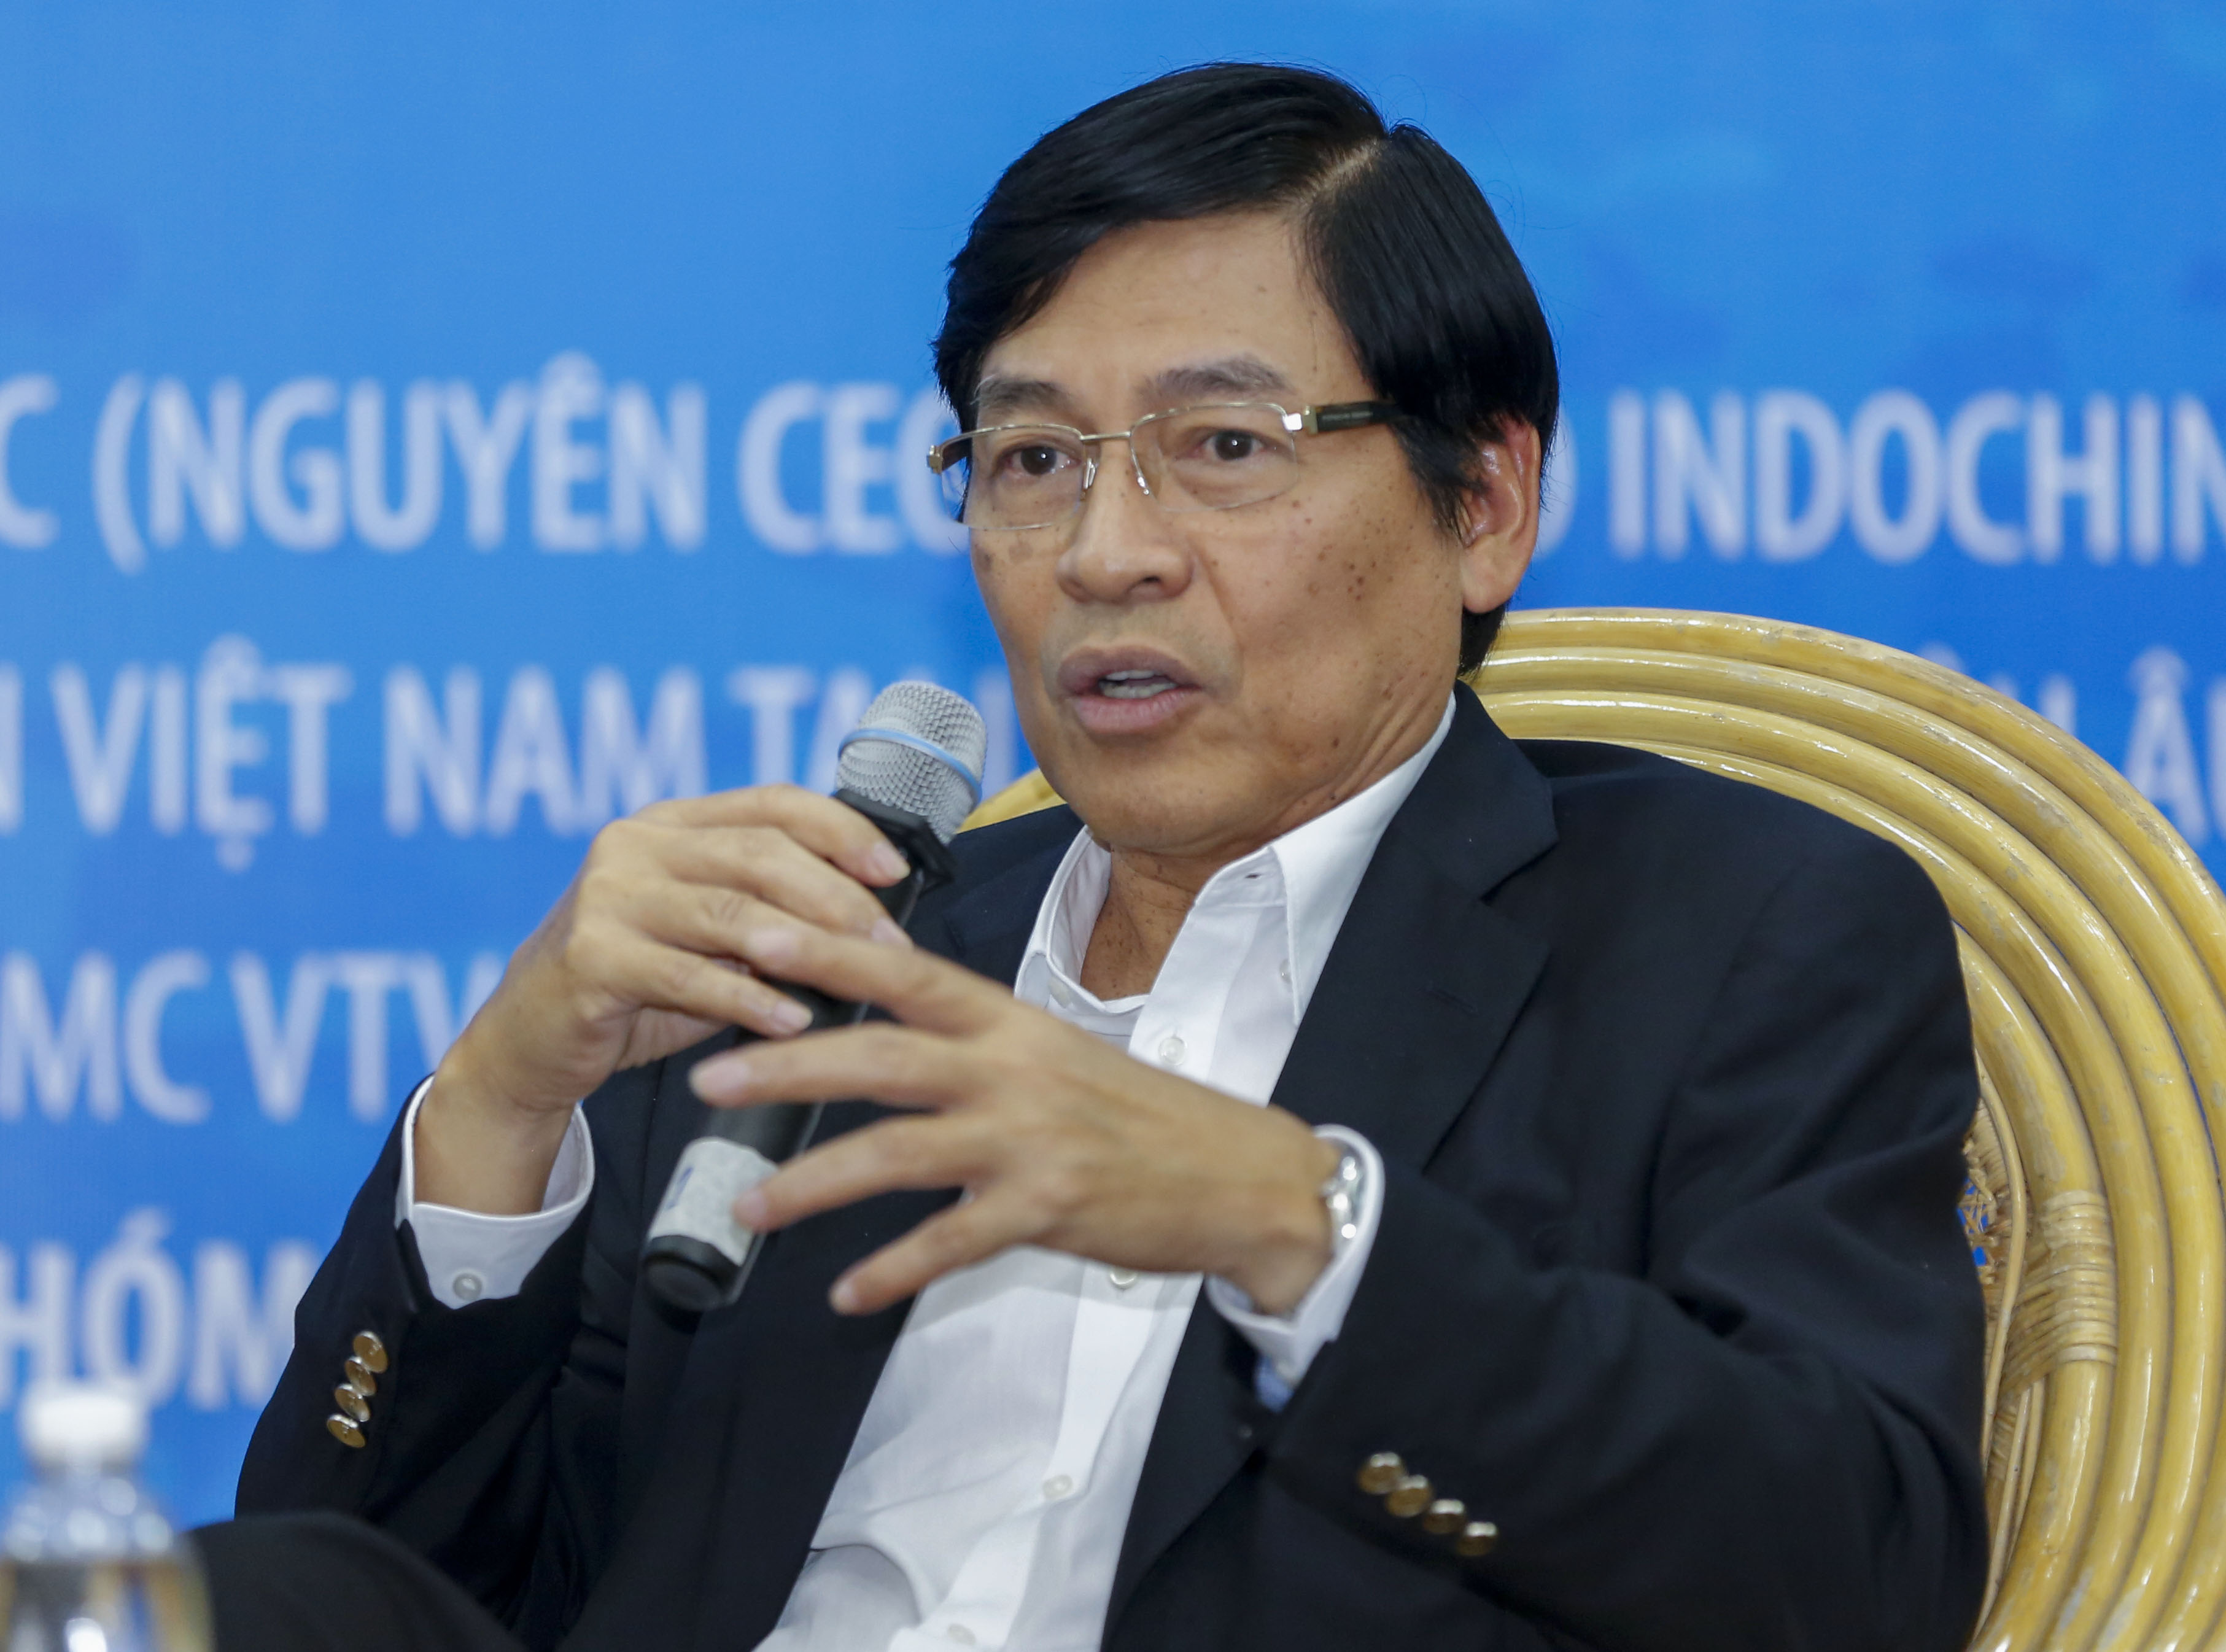 Ông Phạm Phú Ngọc Trai tâm sự về thành công, thất bại của mình trong kinh doanh - Ảnh: Việt Dũng